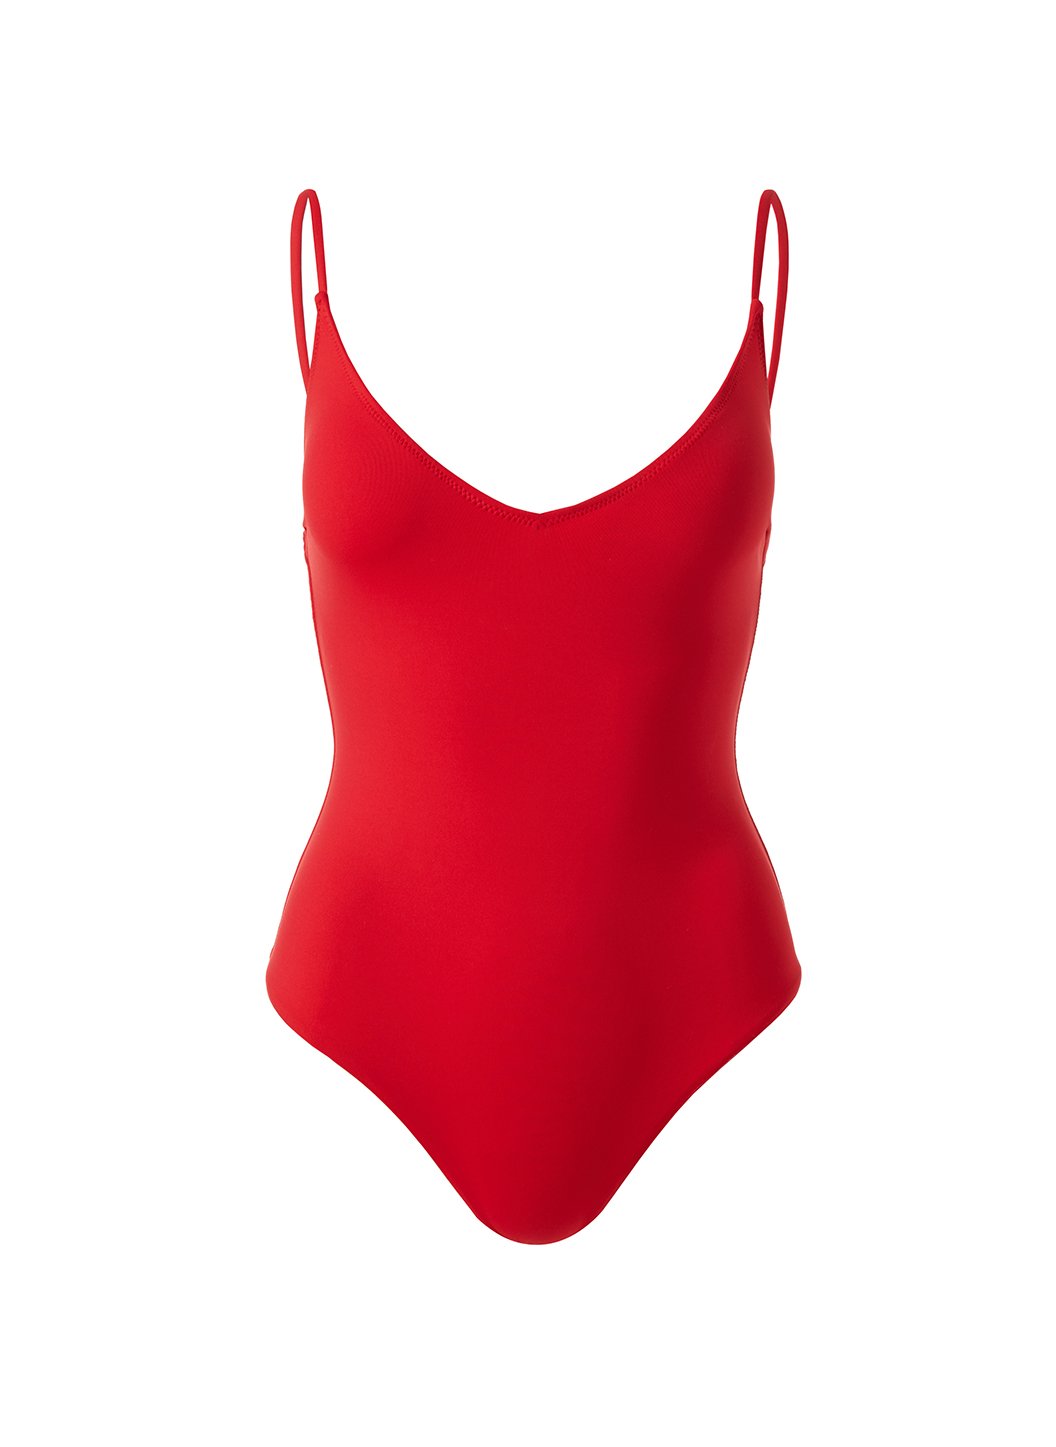 Bora Bora Red Swimsuit